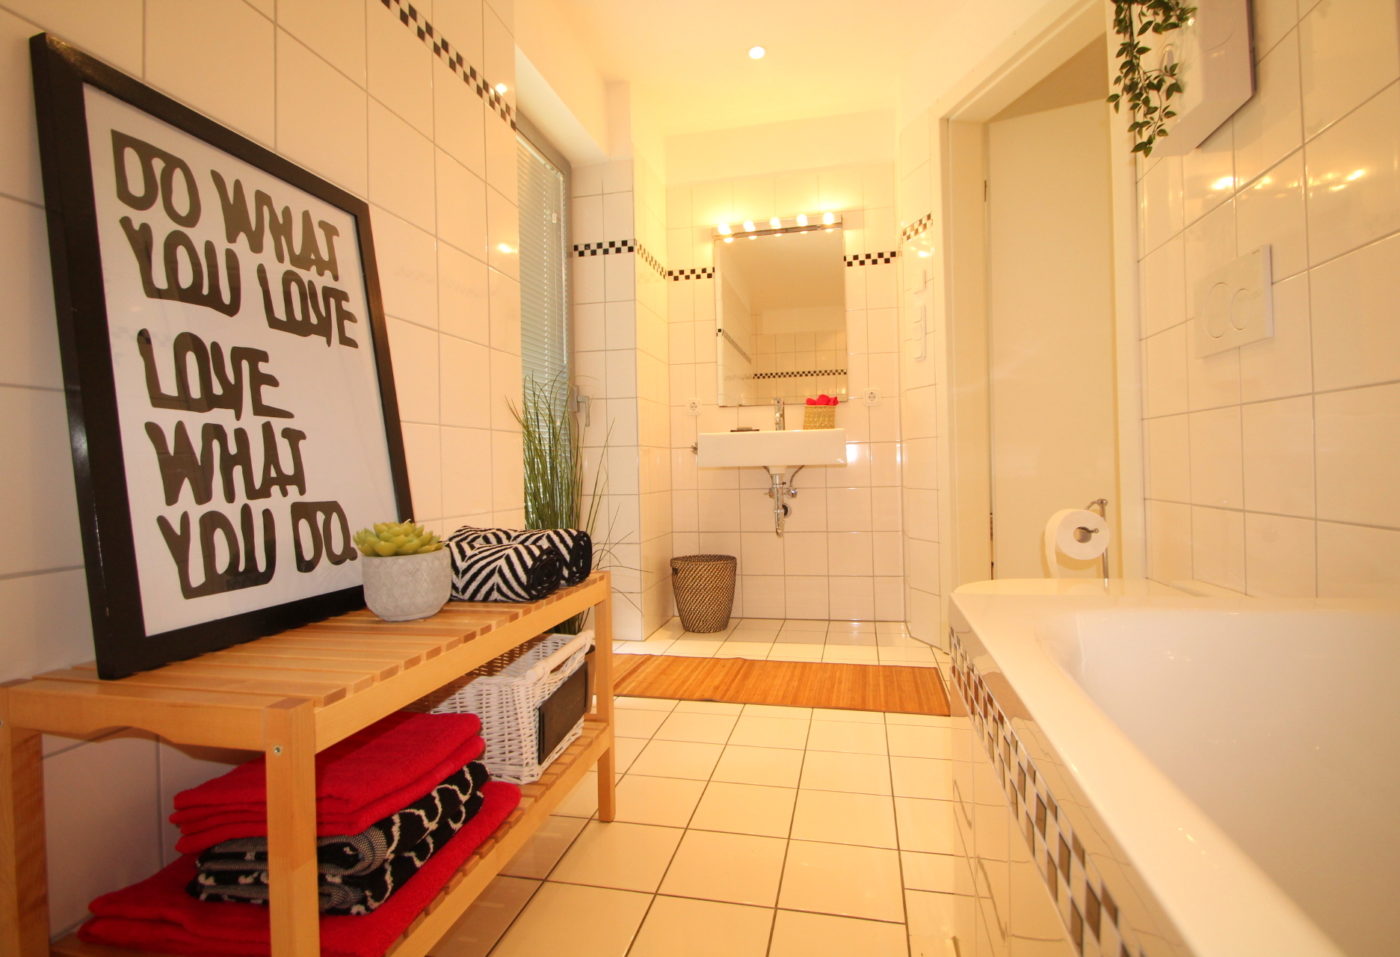 Badezimmer nach dem Homestaging durch Nicole Biernath von Blickfang Homestaging in Soest